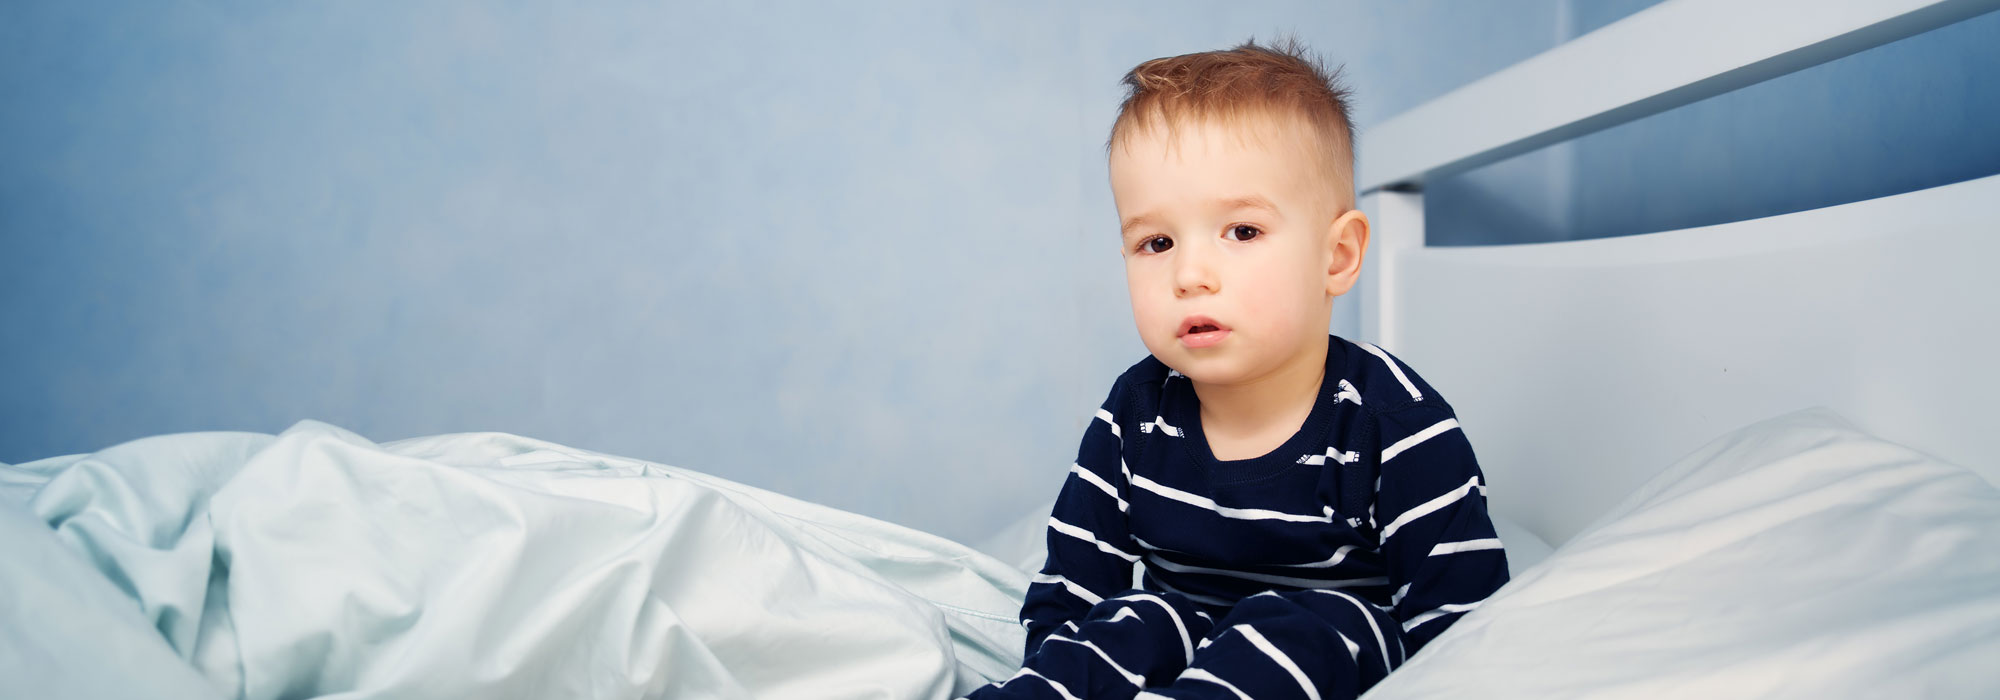 Pospano dijete – trebam li se brinuti?